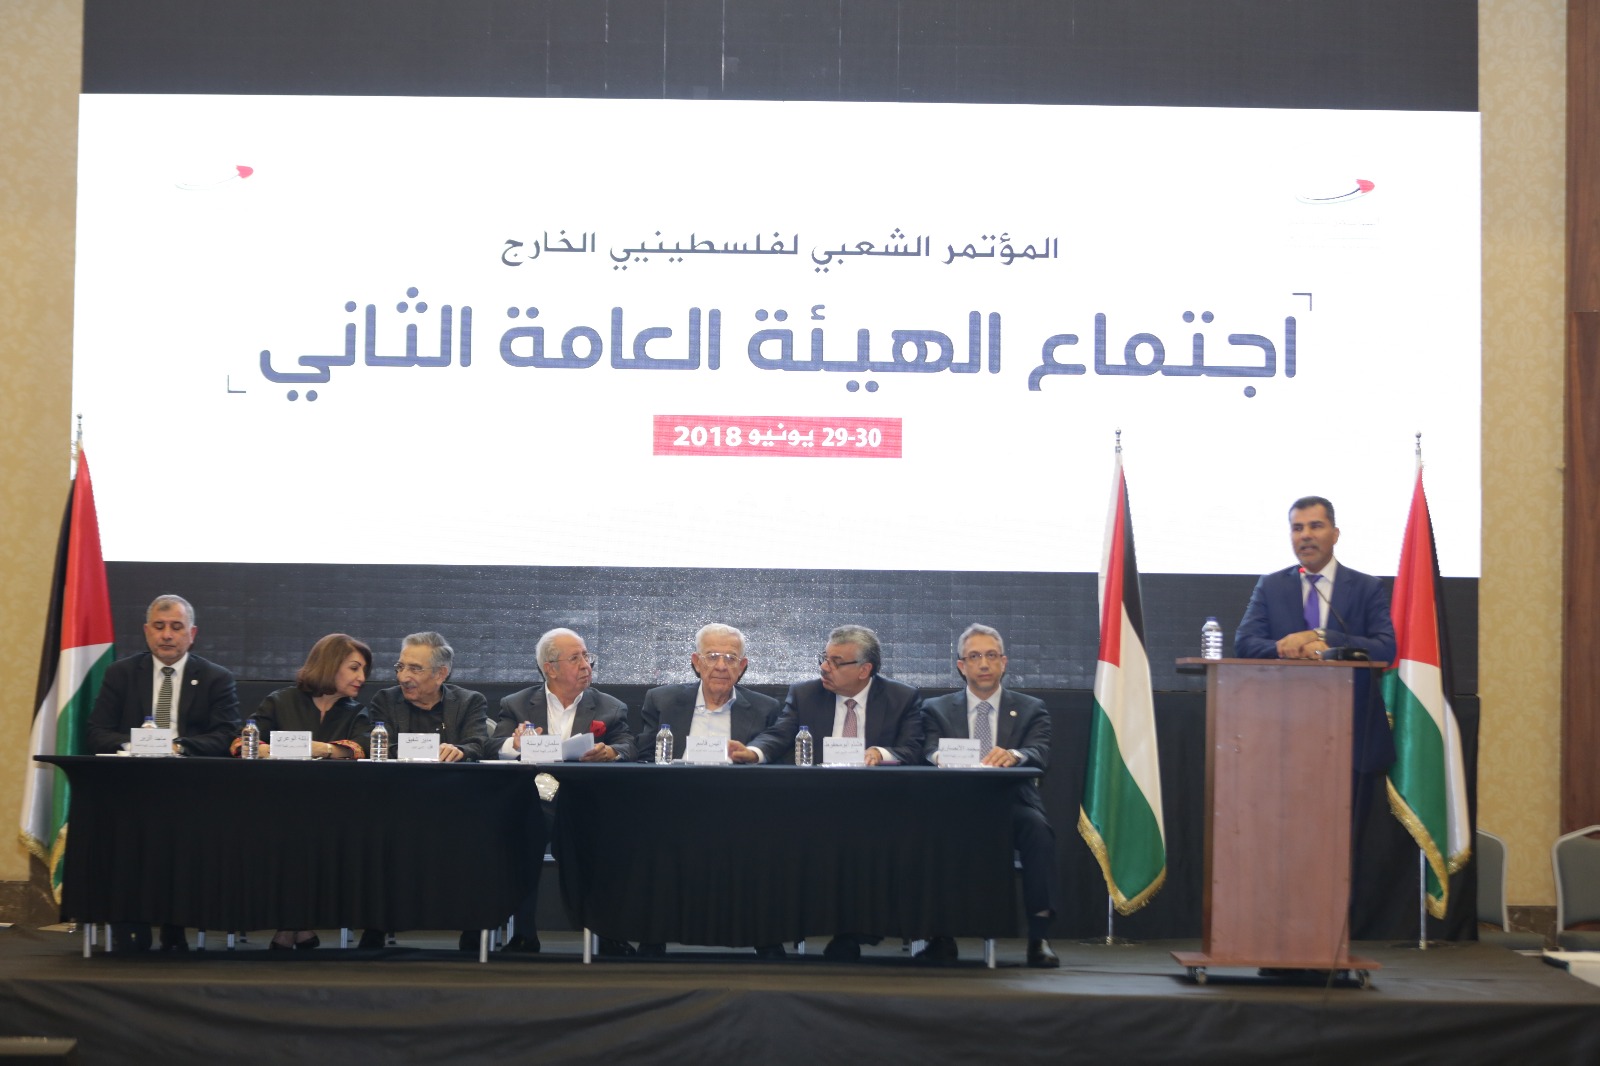 المؤتمر الشعبي يرفض تصفية القضية الفلسطينية ويحذر من استهداف الأونروا